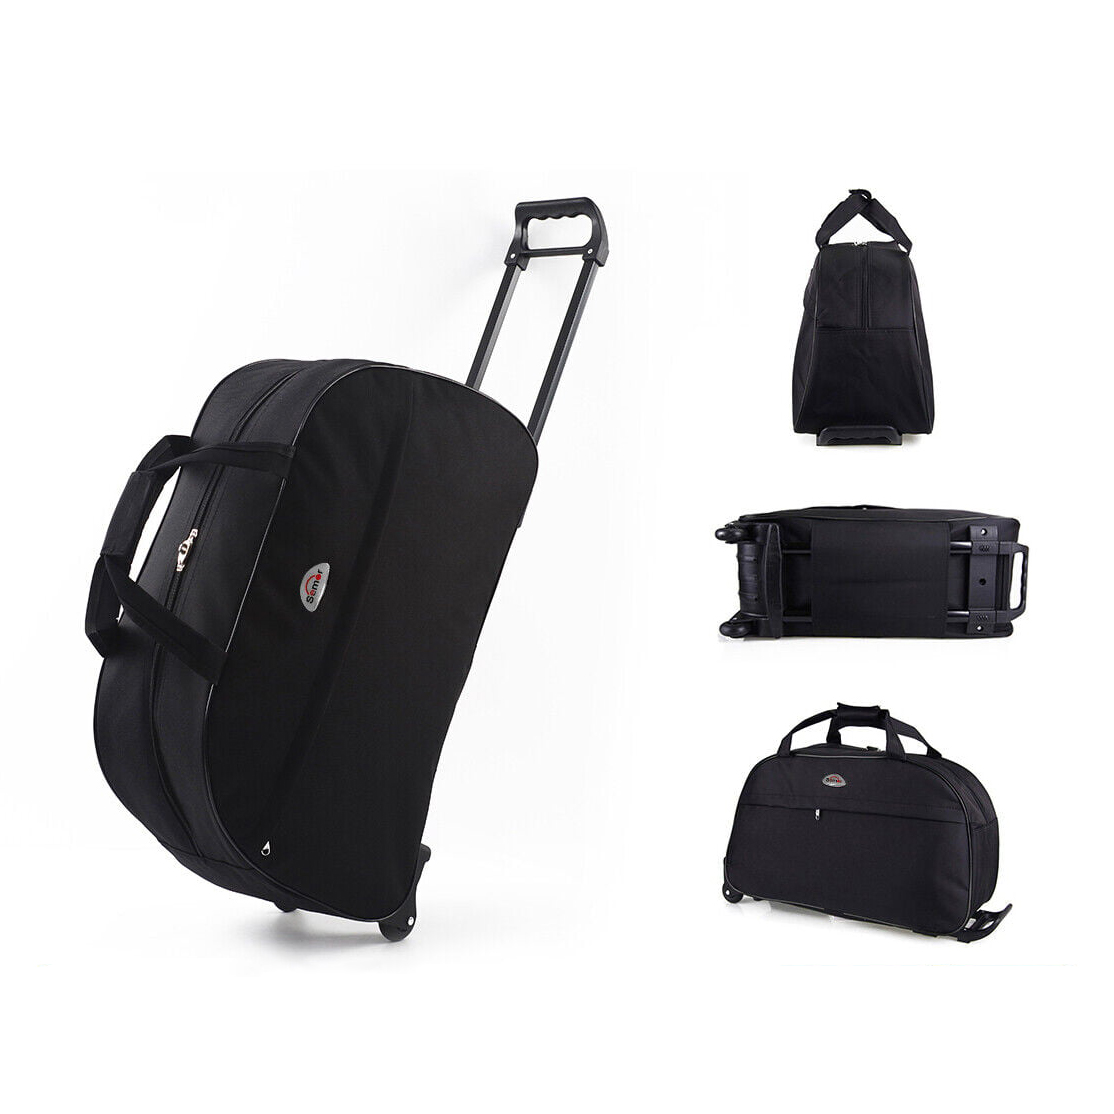 Travel trolley luggage bag